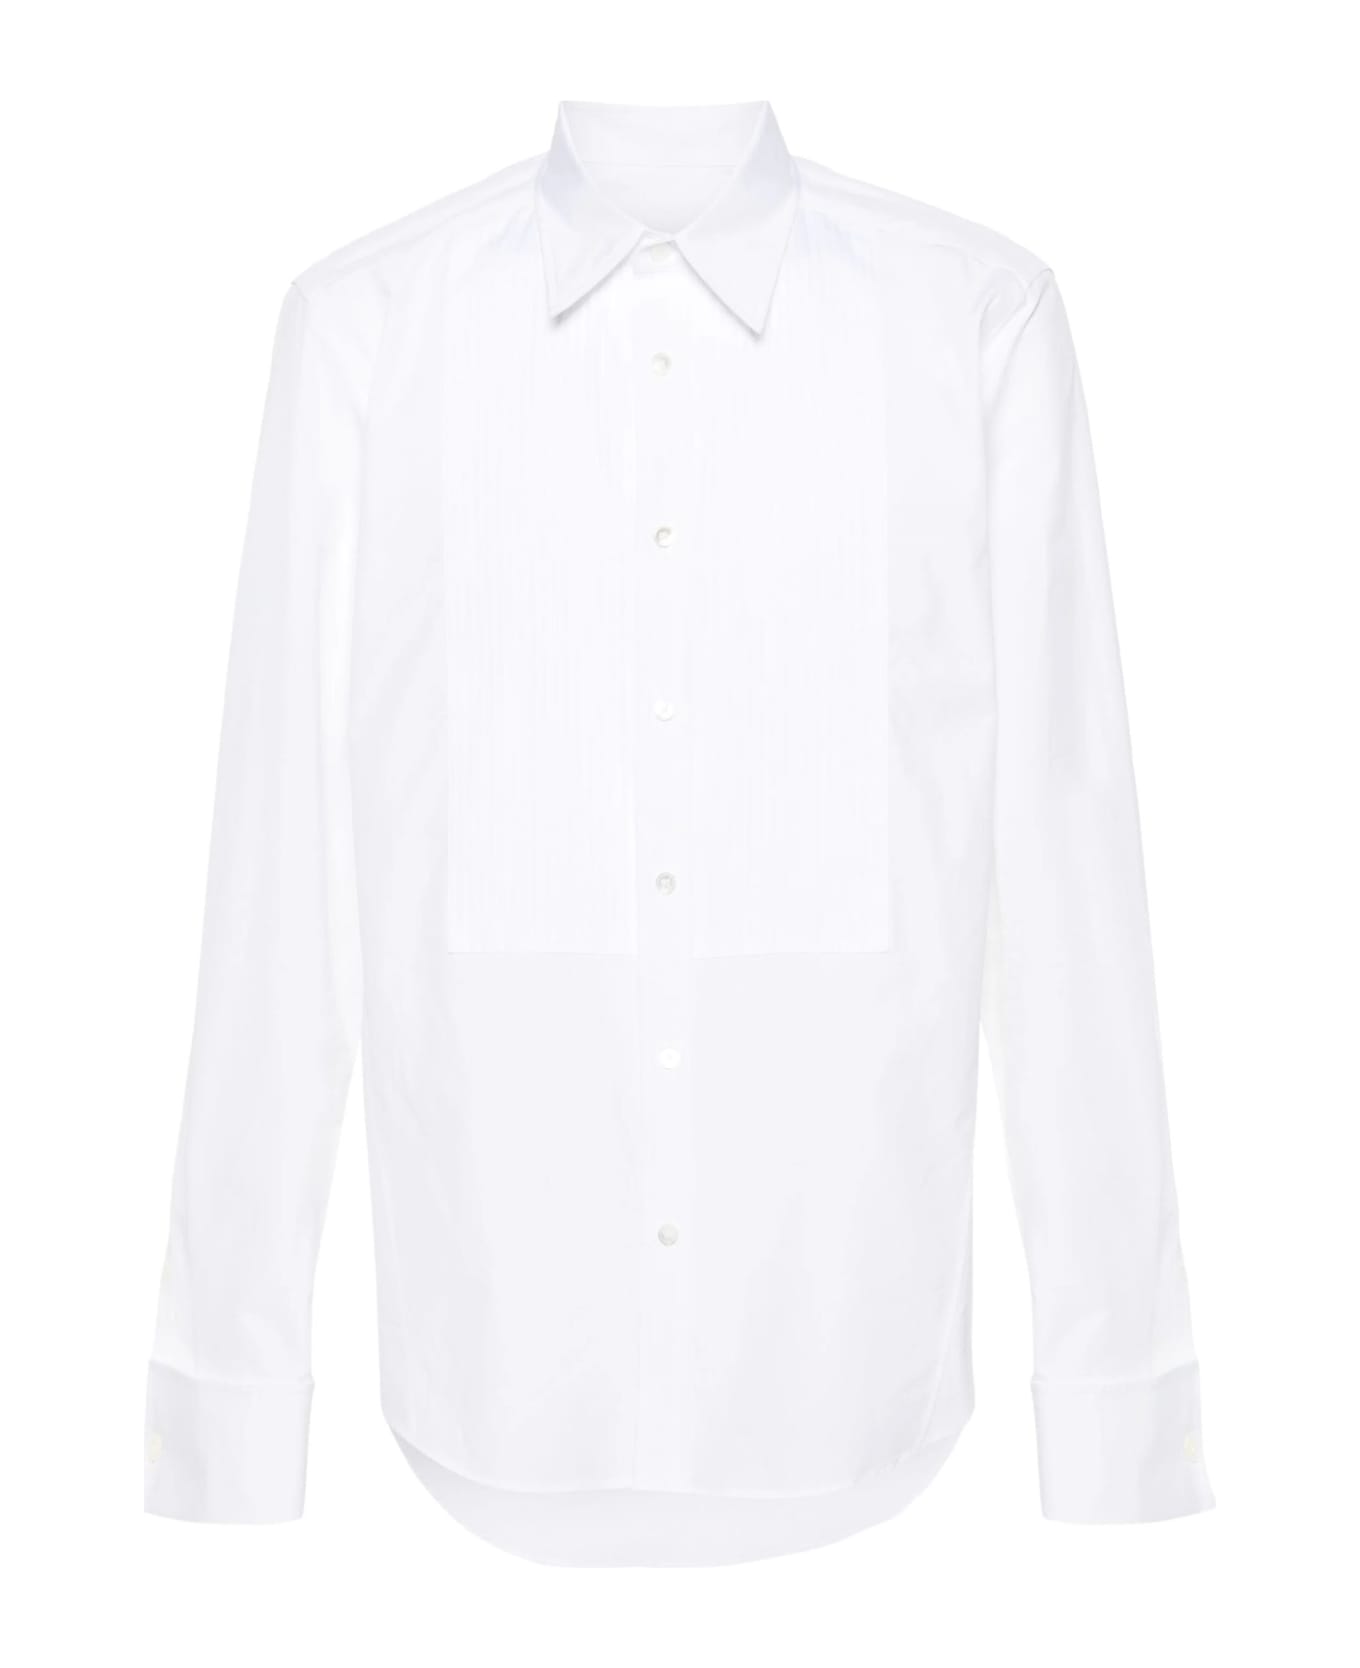 Lanvin Shirts White - White シャツ